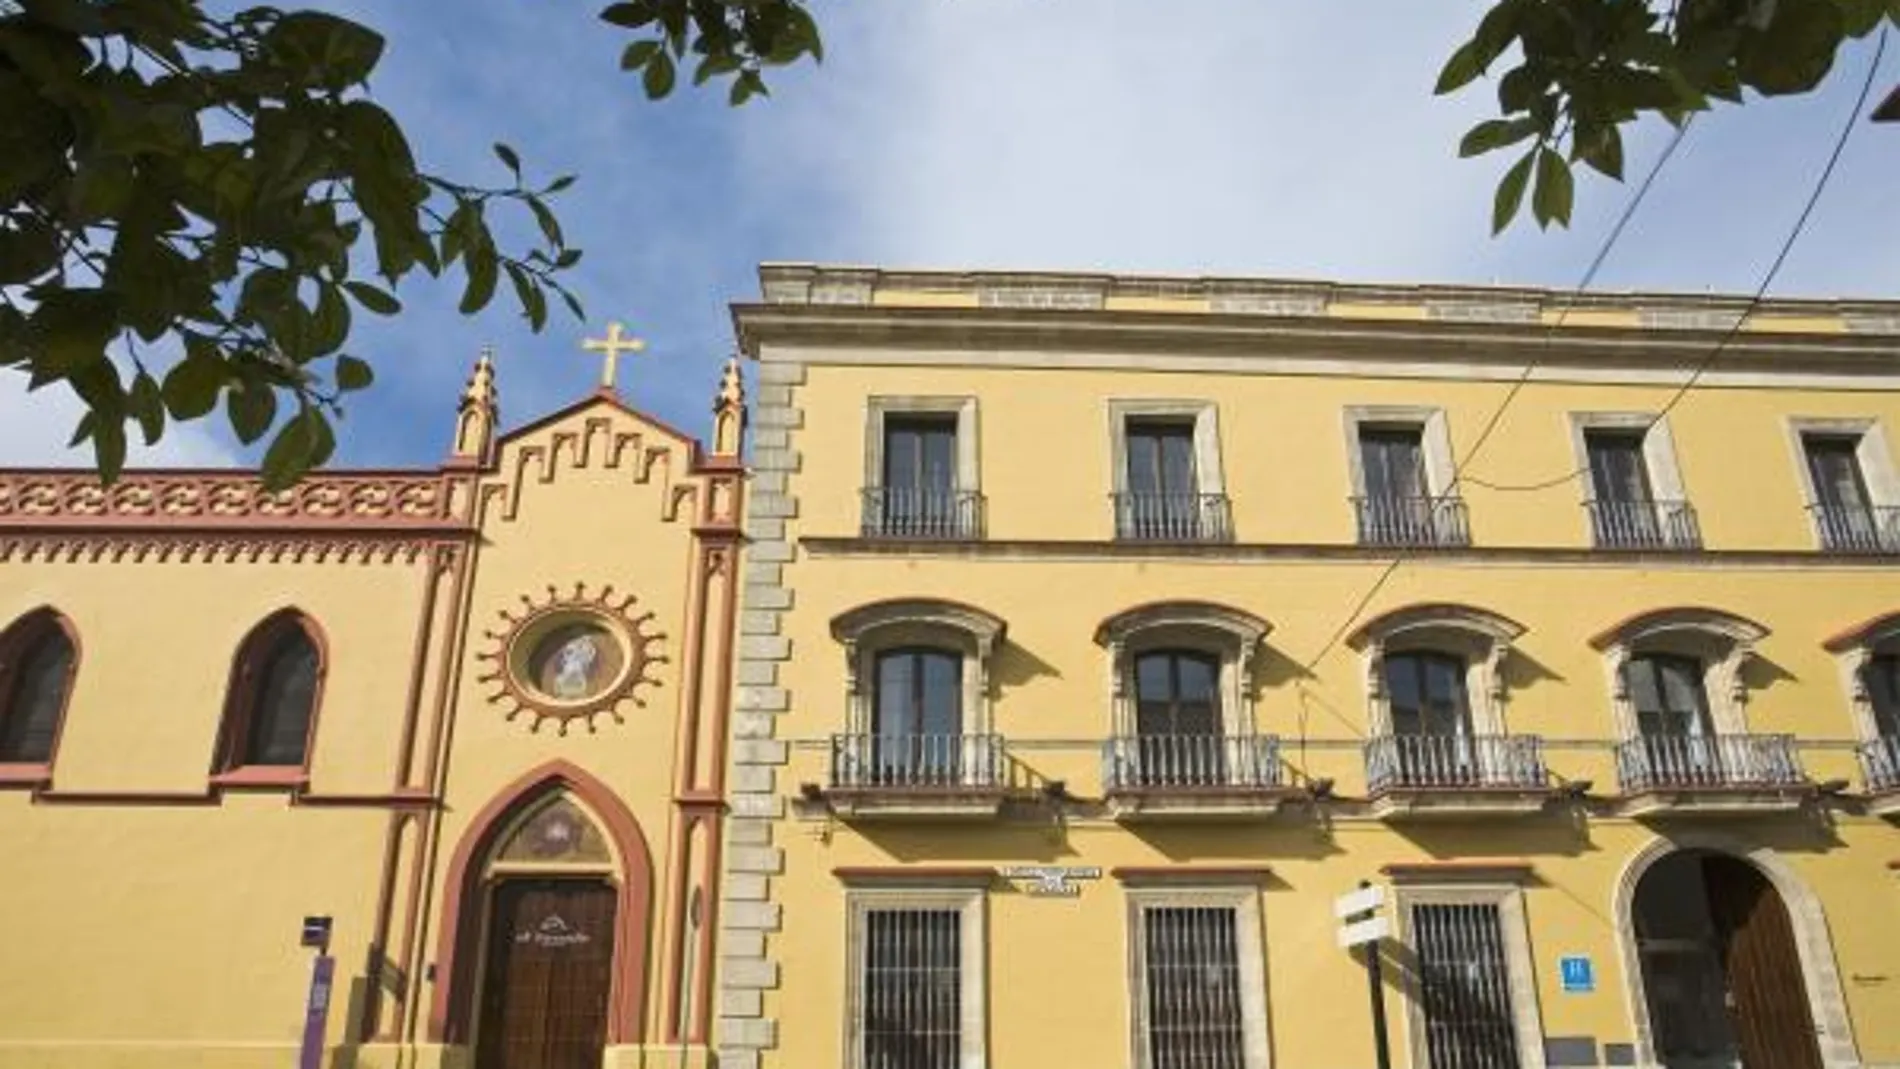 Nacido de la reforma del Convento María Auxiliadora, el hotel muestra la arquitectura del siglo XIX